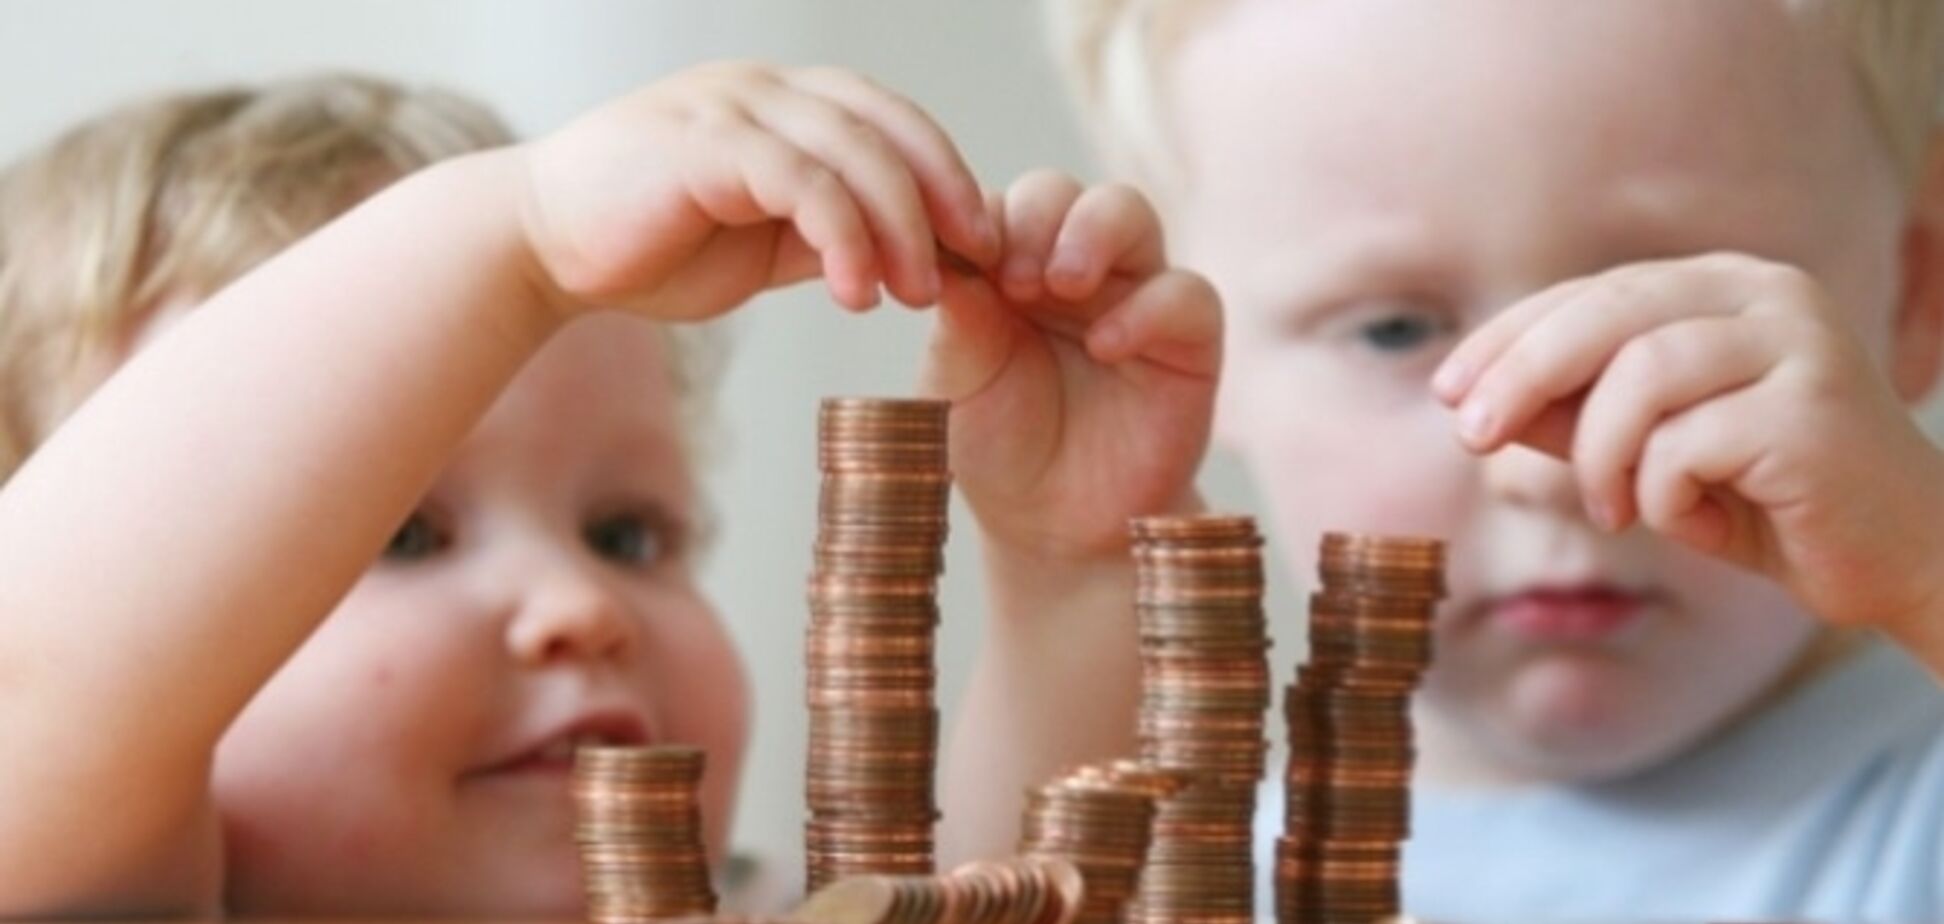 Пособие на ребенка: сколько платят и какие изменения ждать днепрянам